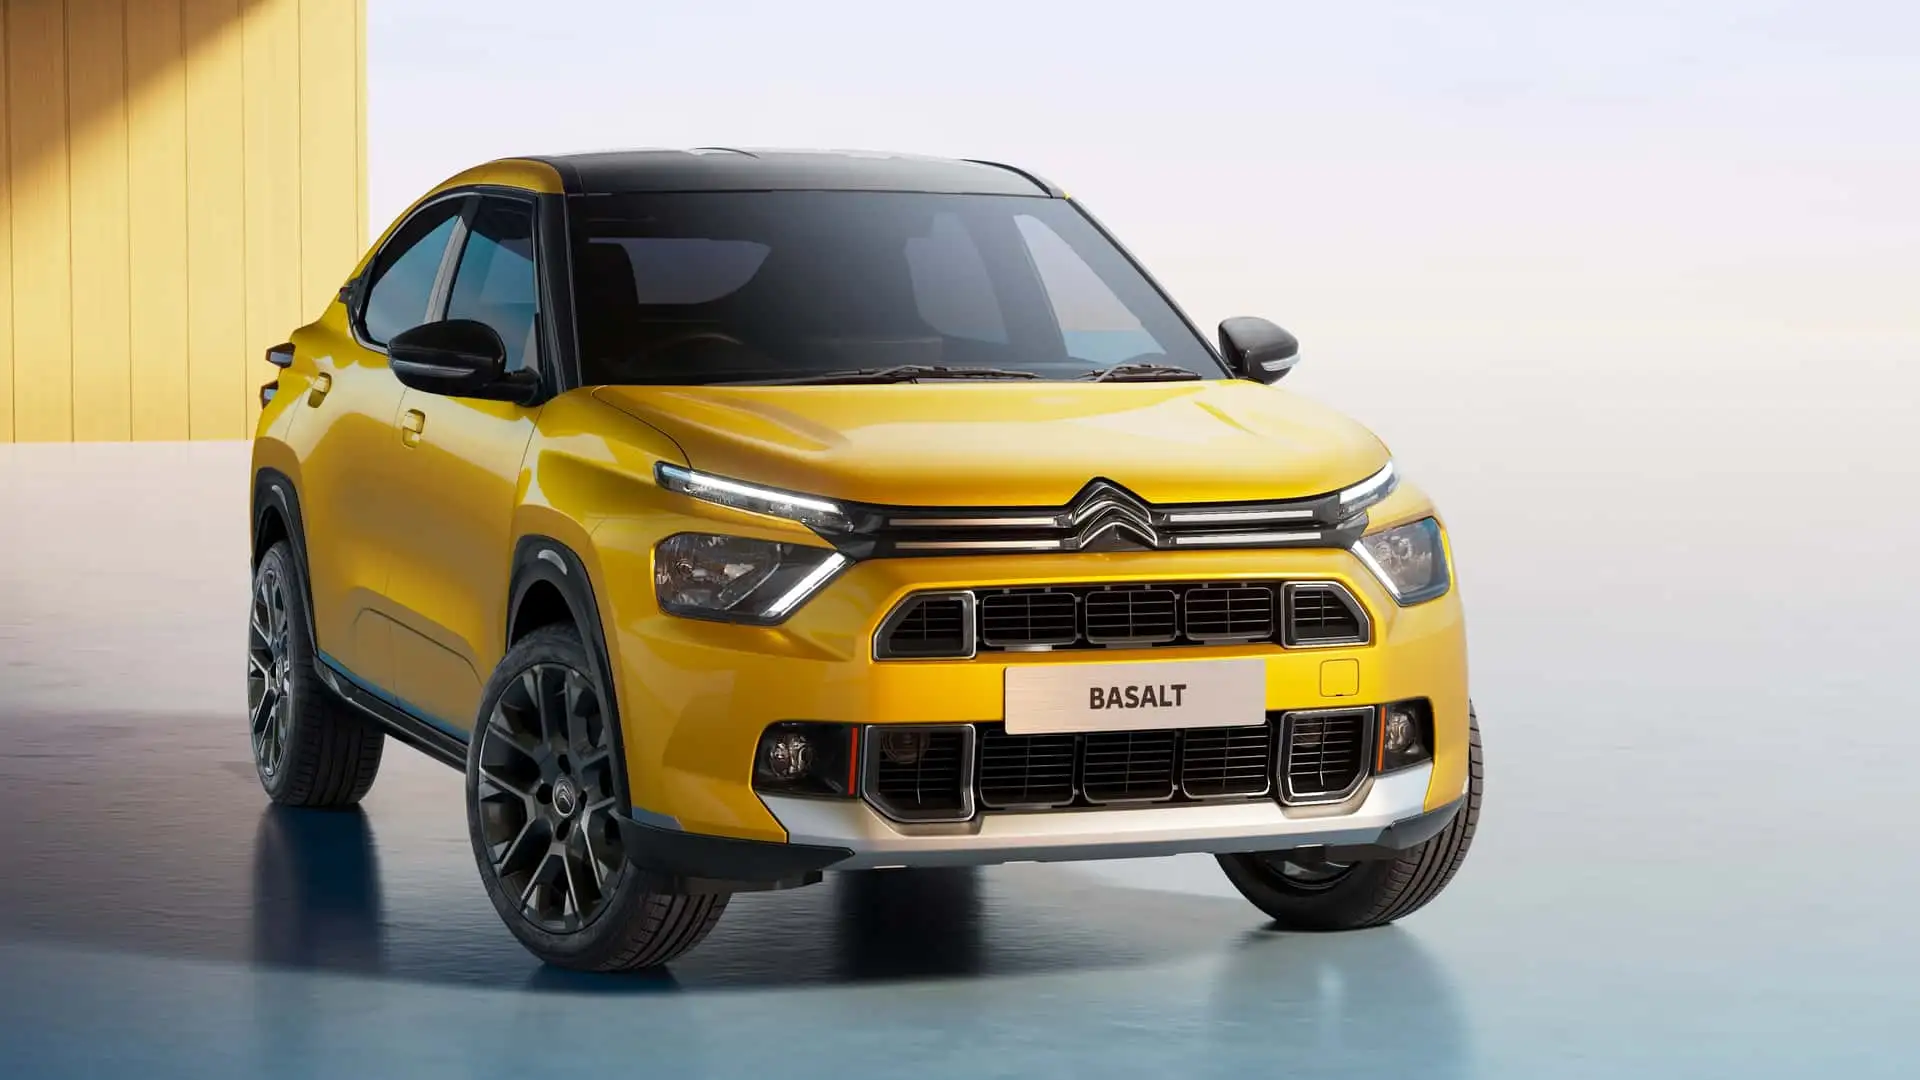 Basalt 𝘝𝘪𝘴𝘪𝘰𝘯, O Suv Coupé Da Citroën - Novo Citroën Basalt 𝘝𝘪𝘴𝘪𝘰𝘯 – Uma Visão Inovadora Da Citroën Para Seu Primeiro Suv Coupé, Que Estará Disponível No Segundo Semestre De 2024 Na América Do Sul.